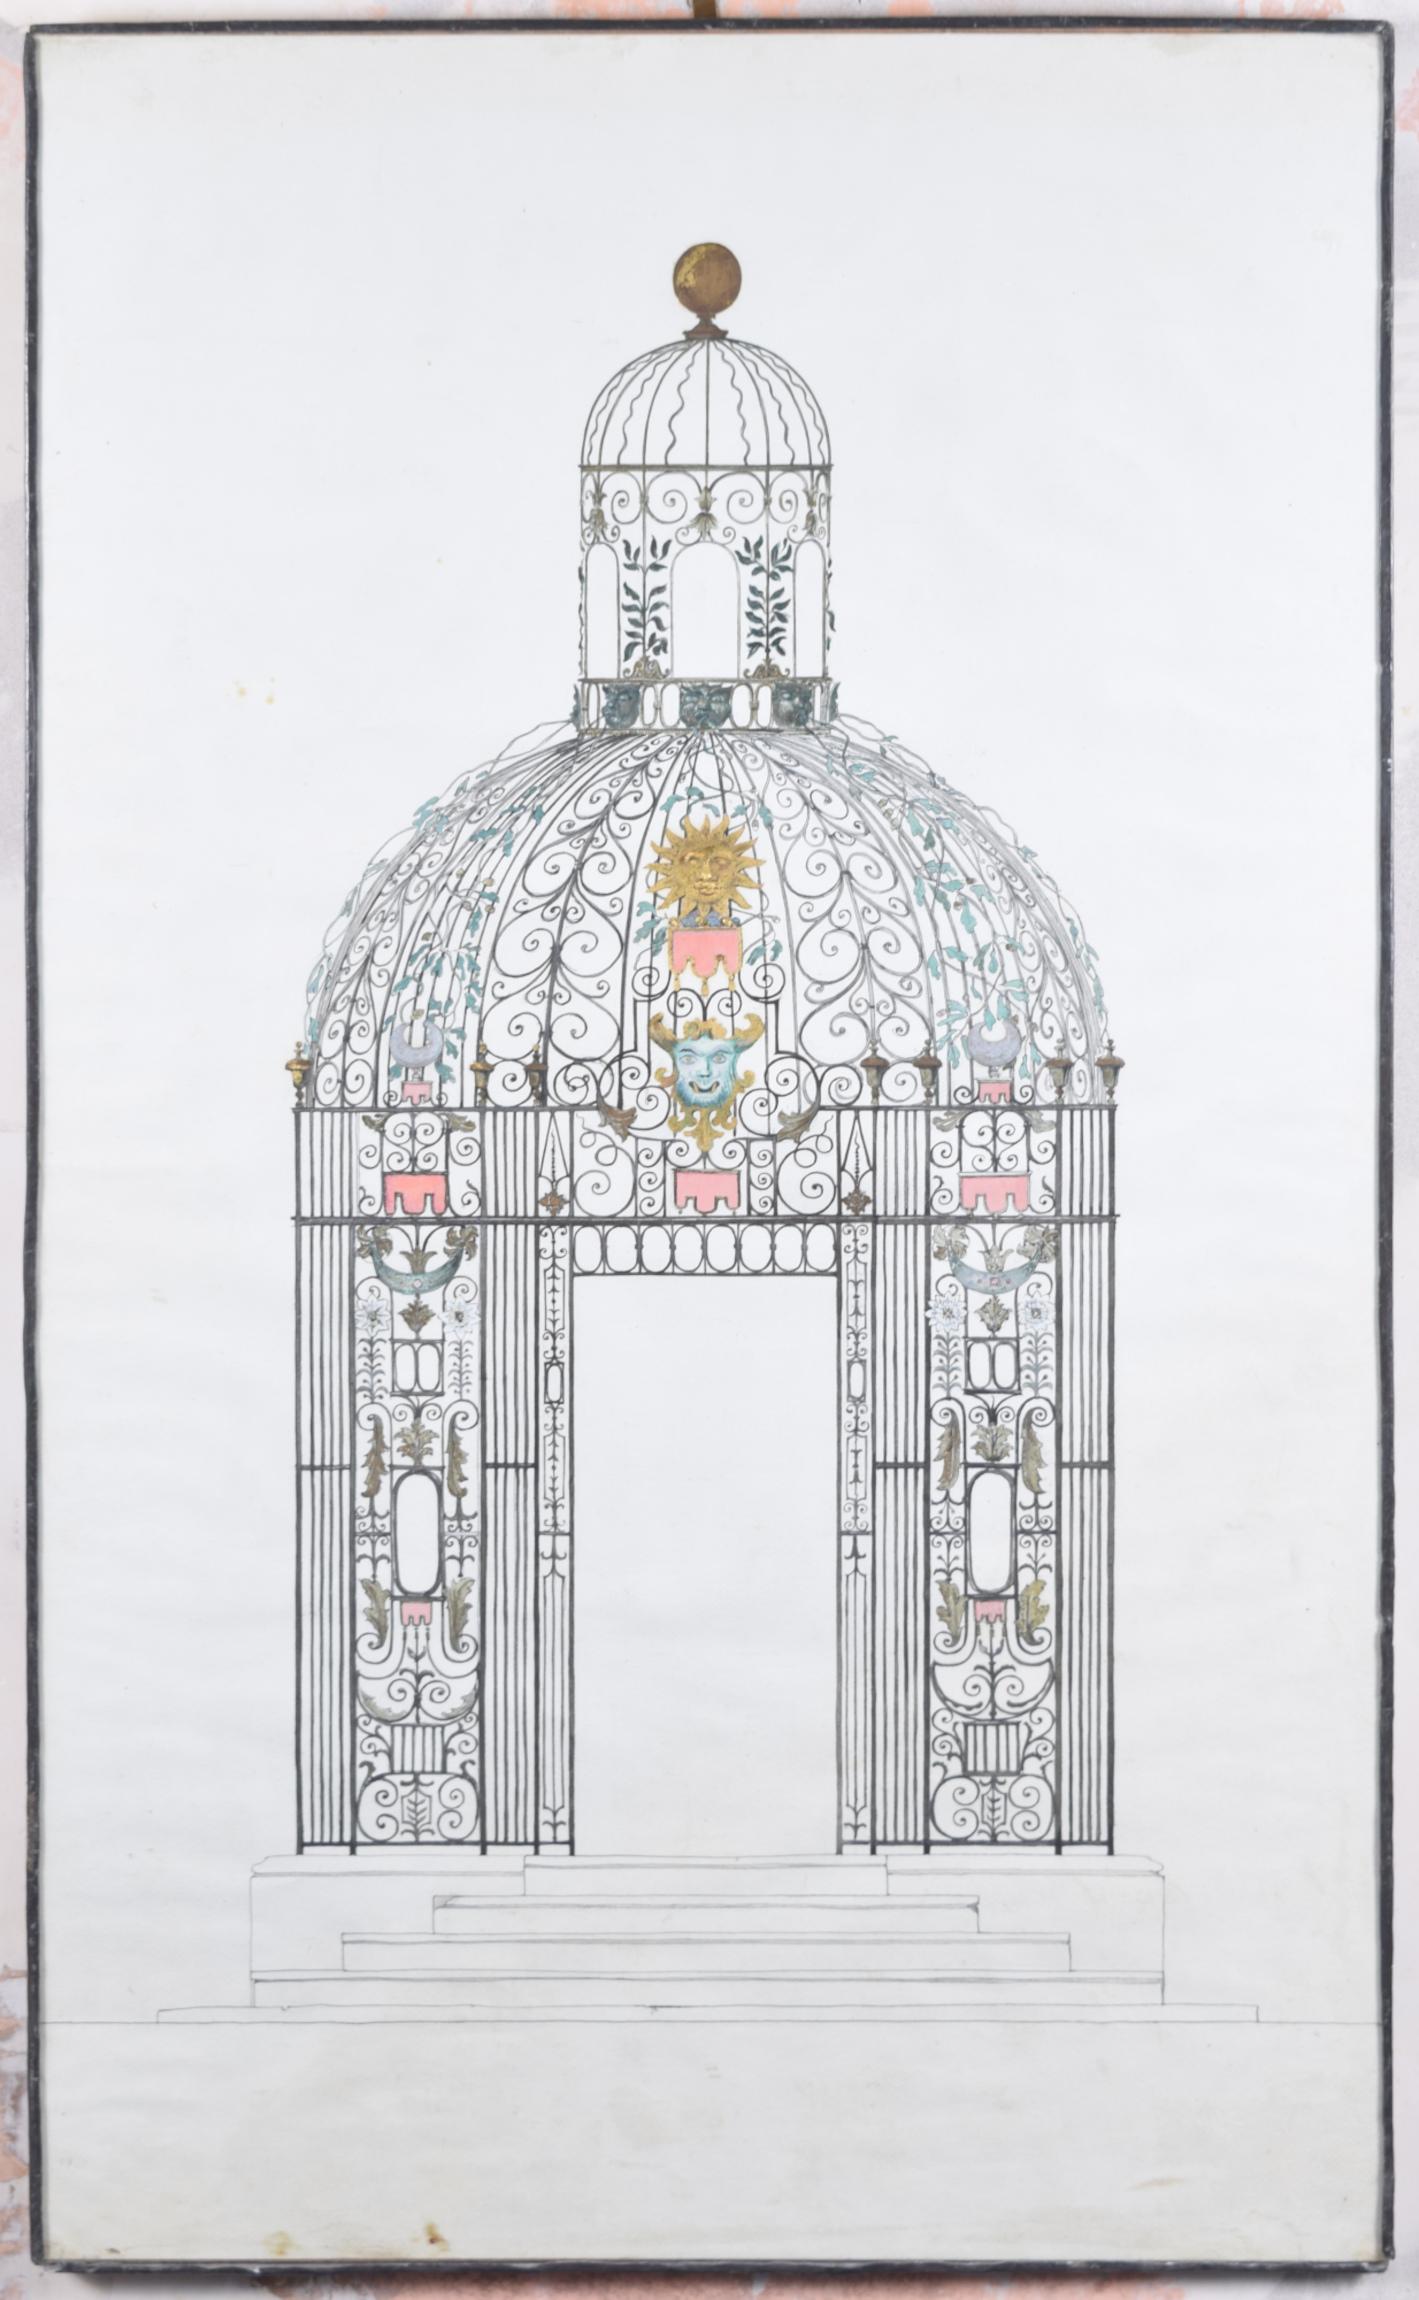 Louis Osman était un artiste, architecte, orfèvre et médailleur anglais. Il se distingue par la couronne en or qu'il a conçue et réalisée pour l'investiture en 1969 de Charles, prince de Galles. Nous avons acquis de nombreuses archives des œuvres